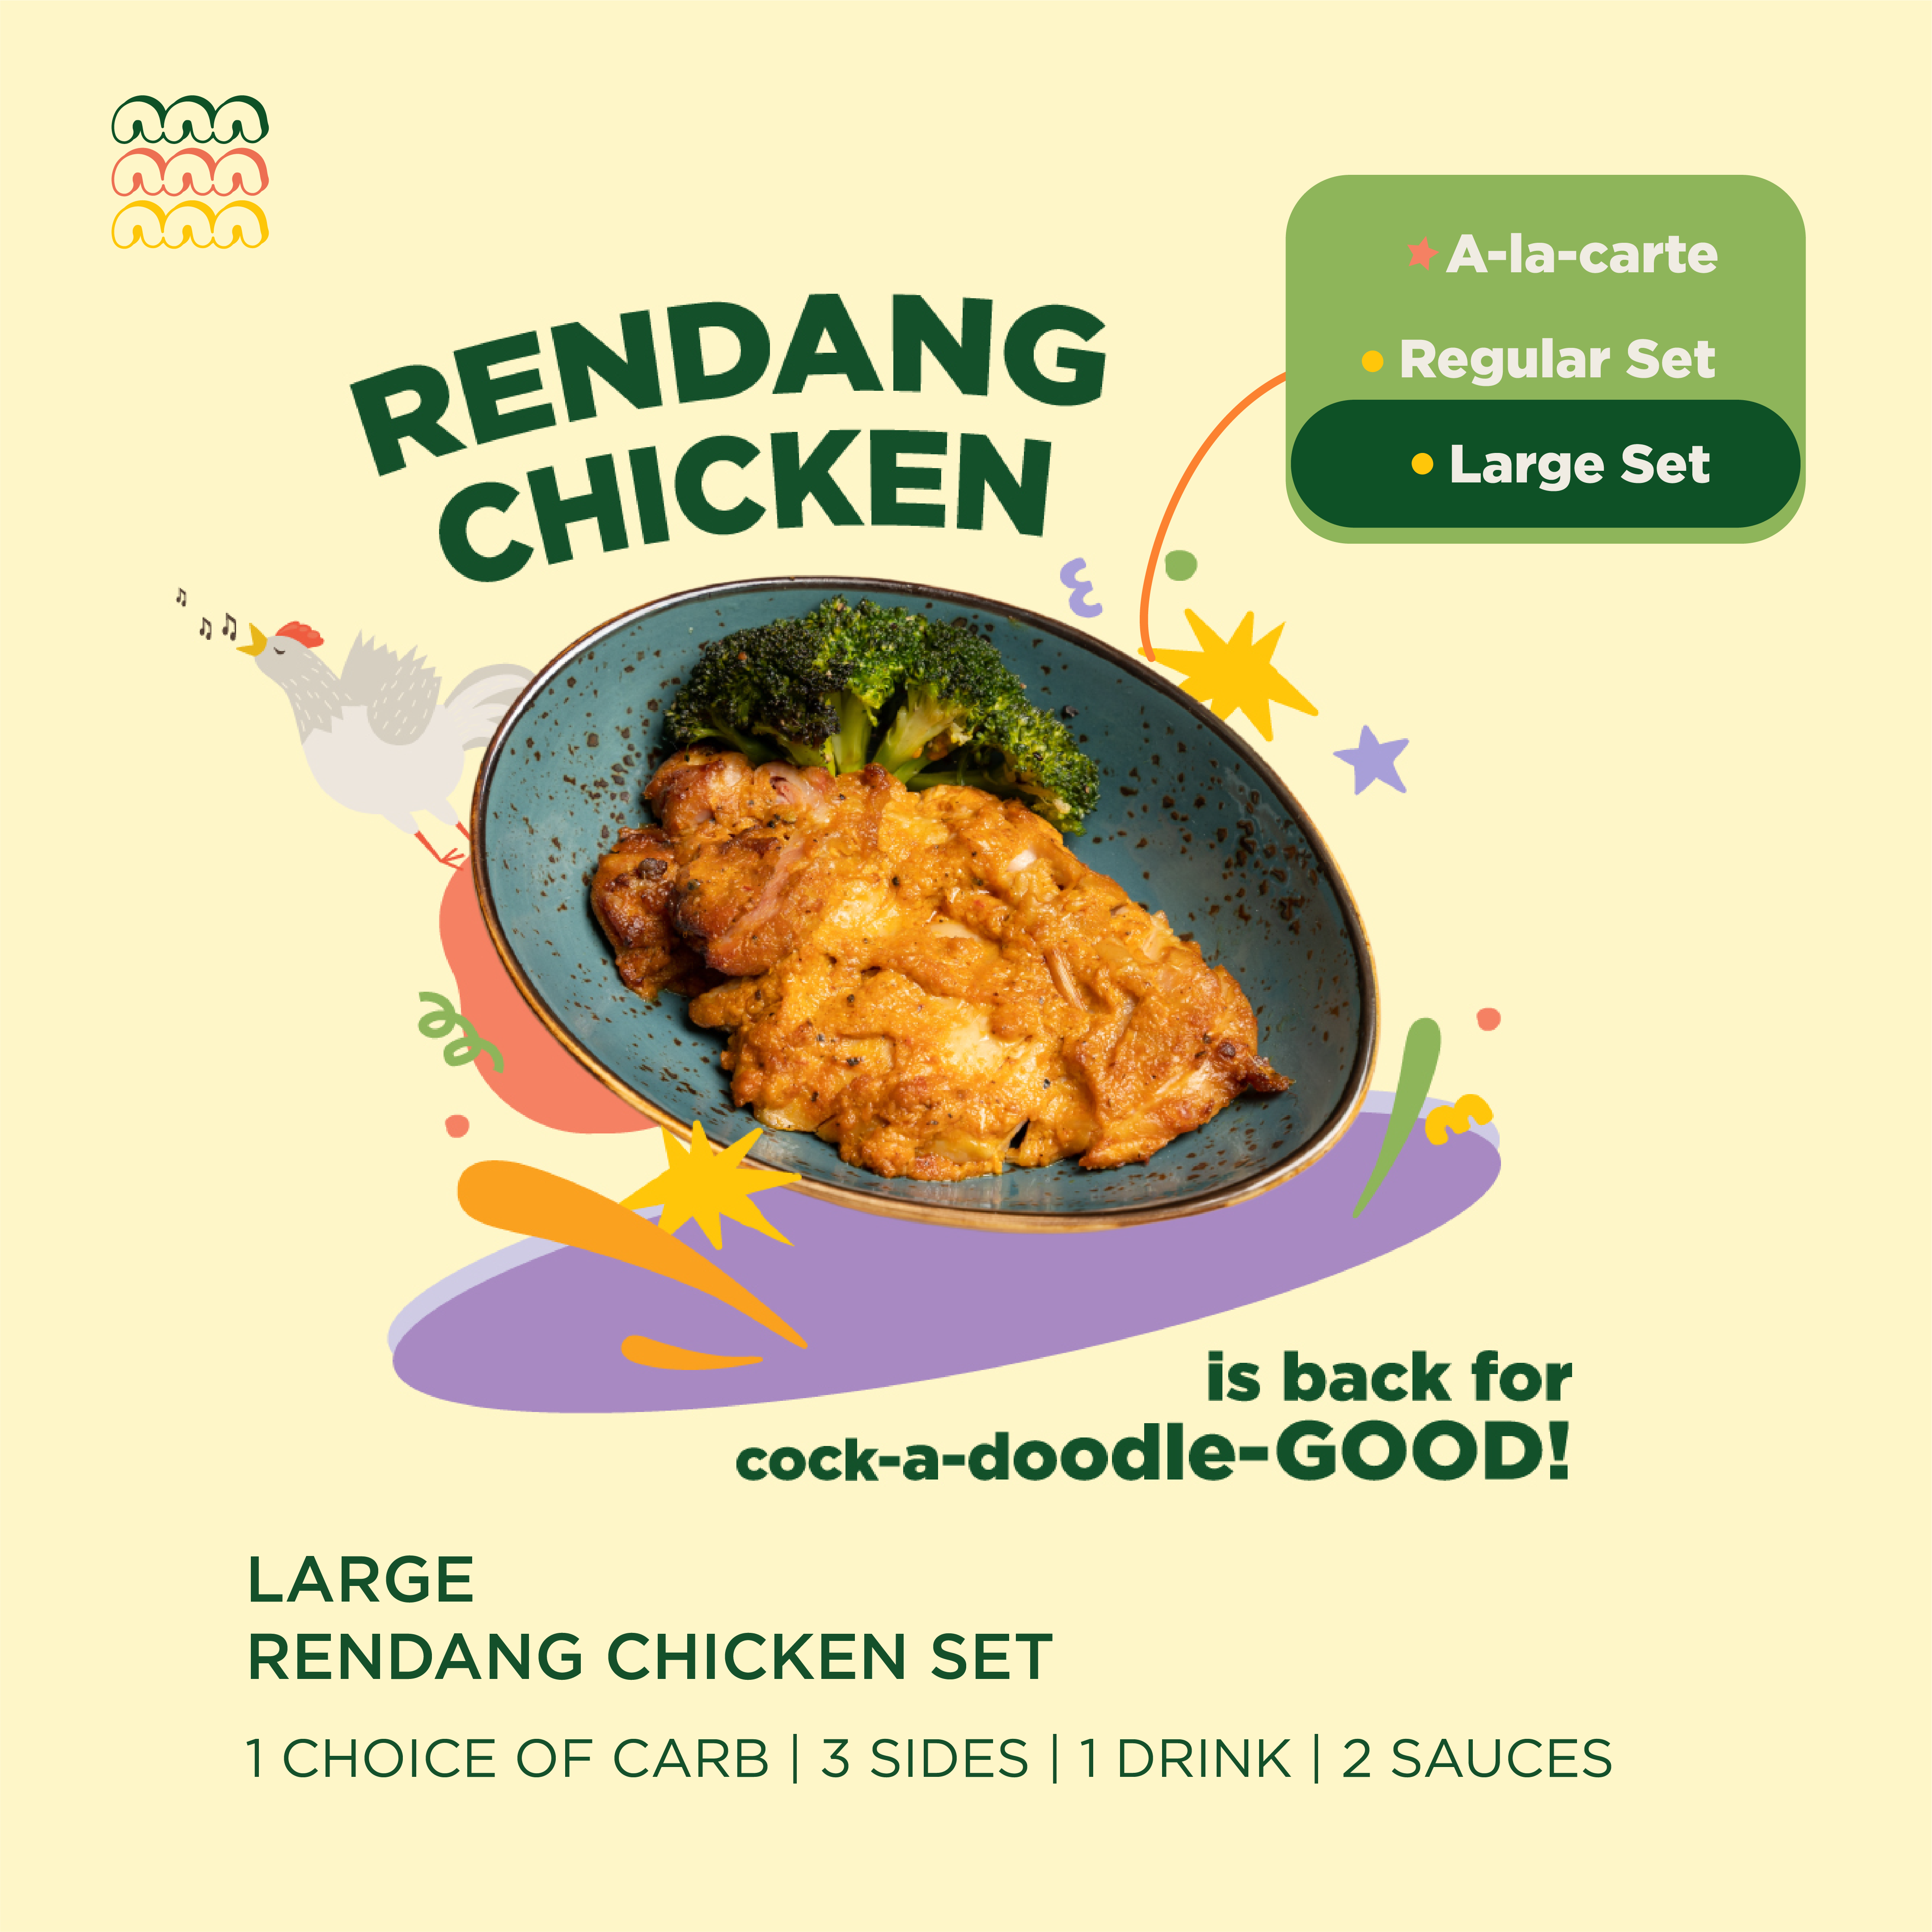 Large Rendang Chicken Set